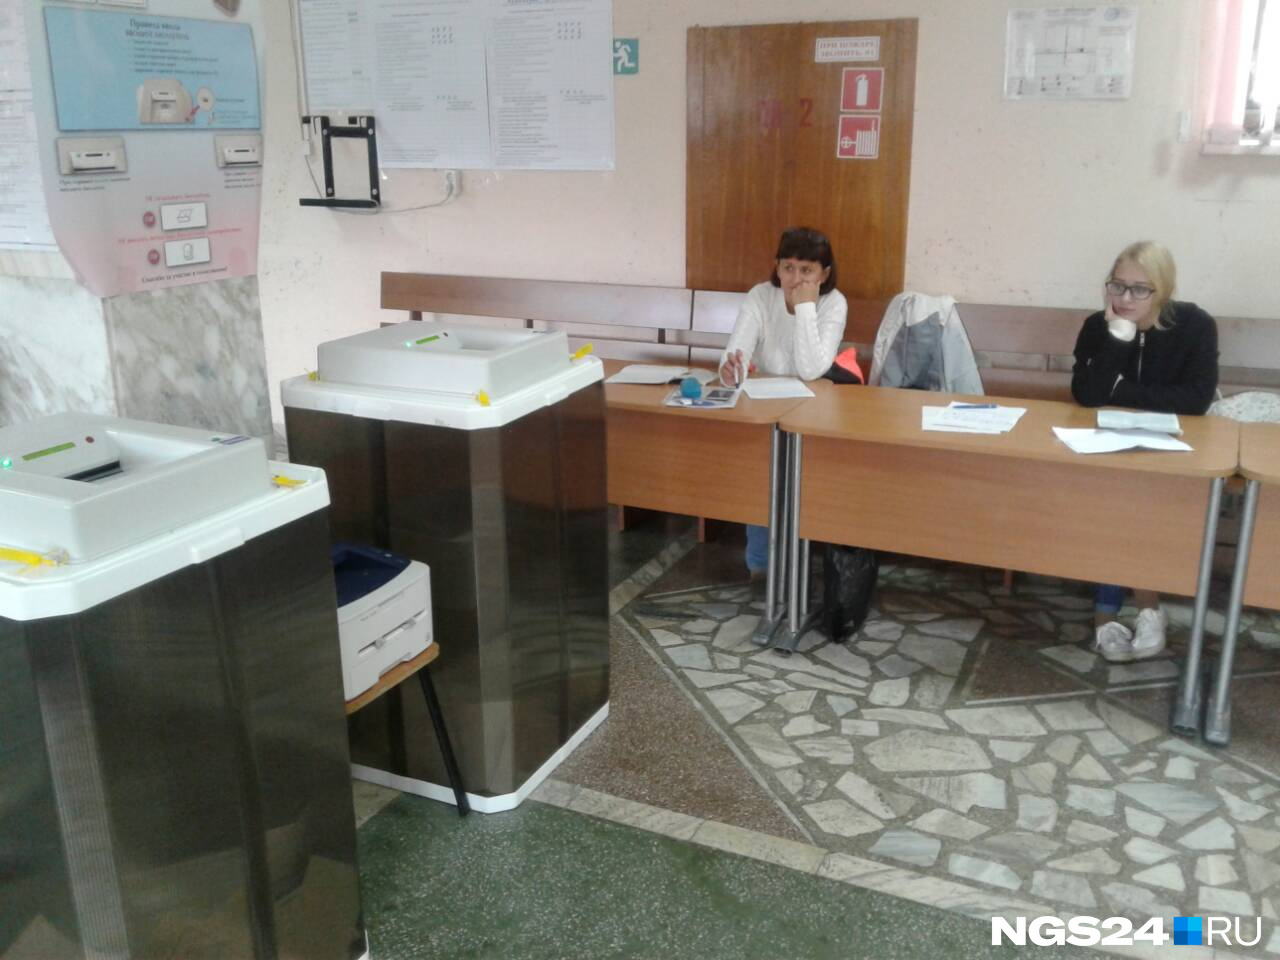 На избирательном участке в СФУ на Красрабе члены избирательной комиссии откровенно скучают